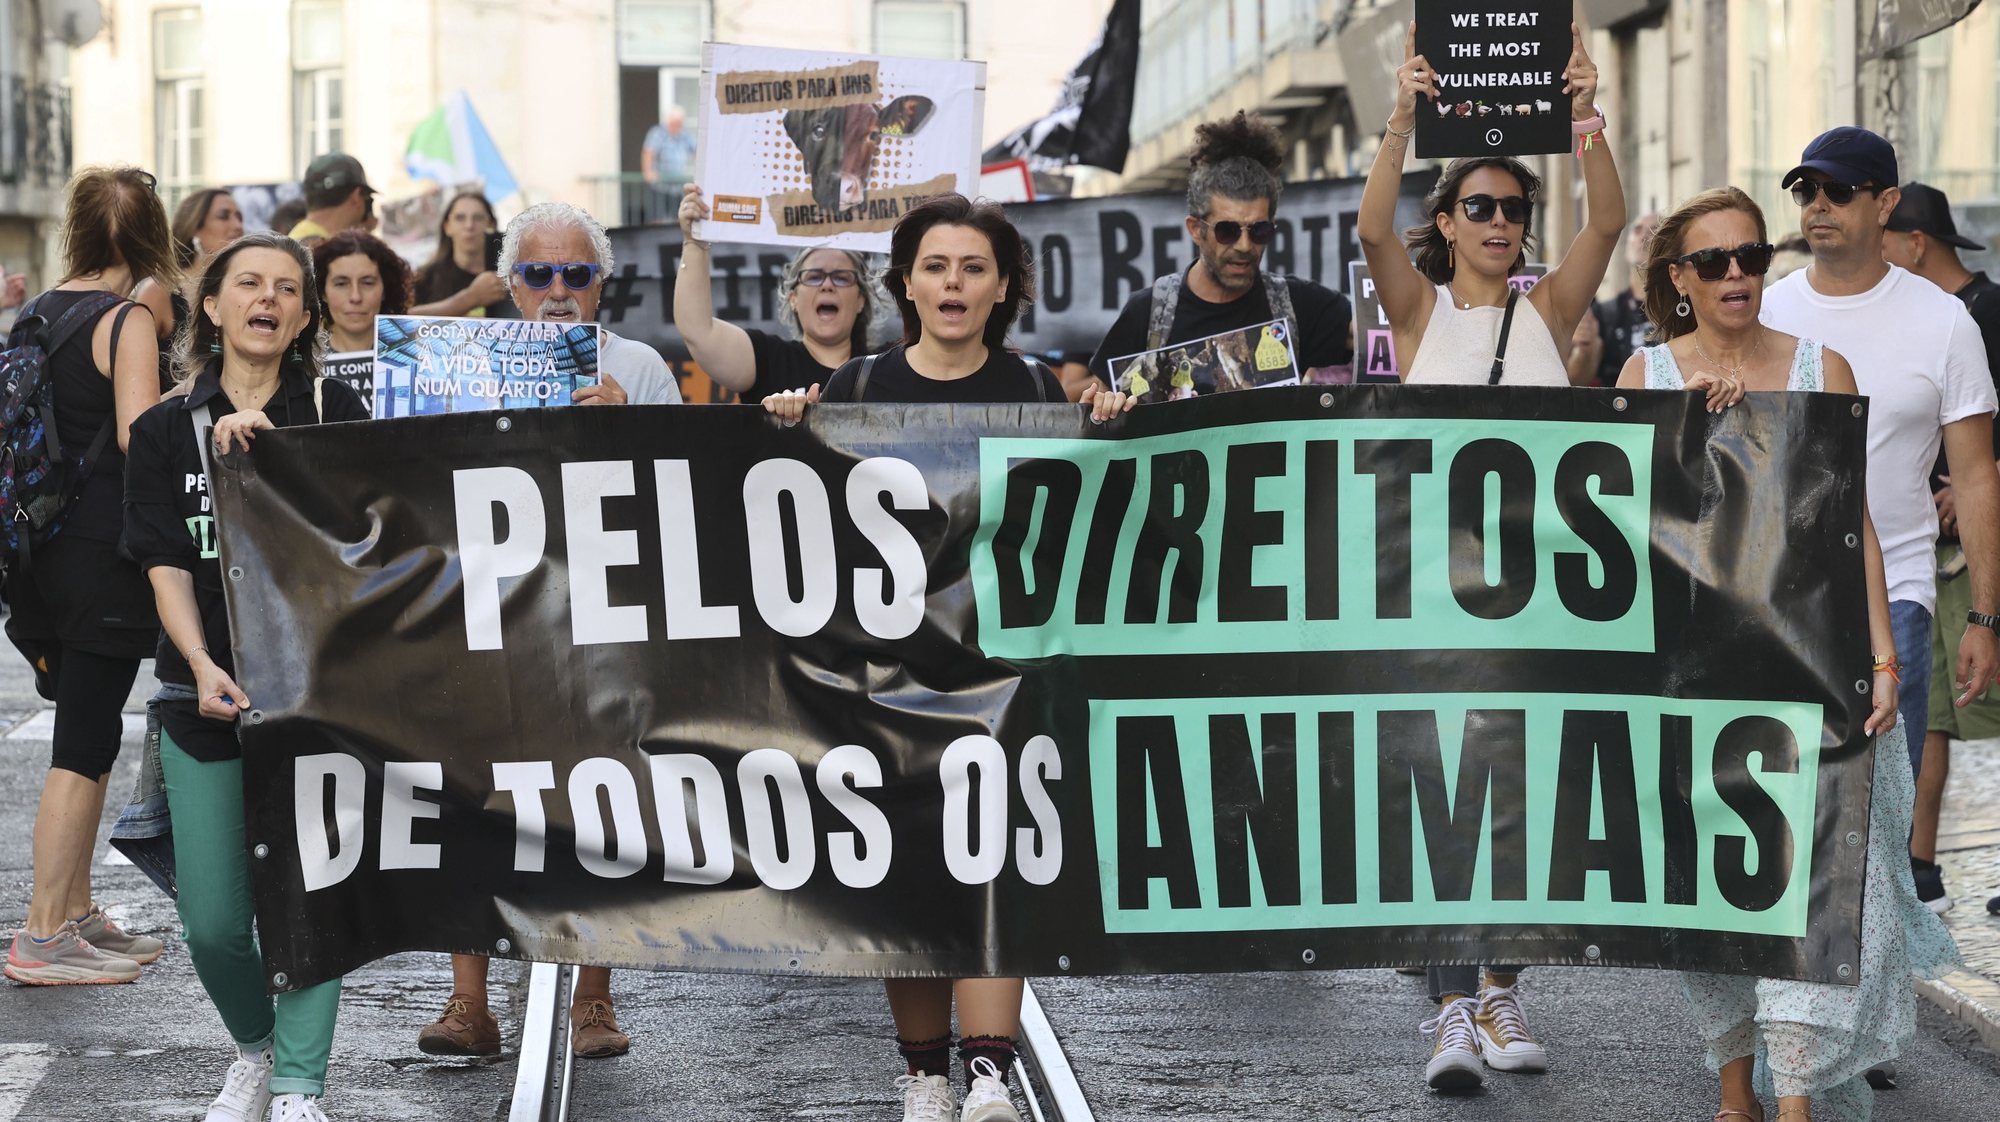 Protesto de grupo ativista pelos direitos animais em Lisboa (PT).